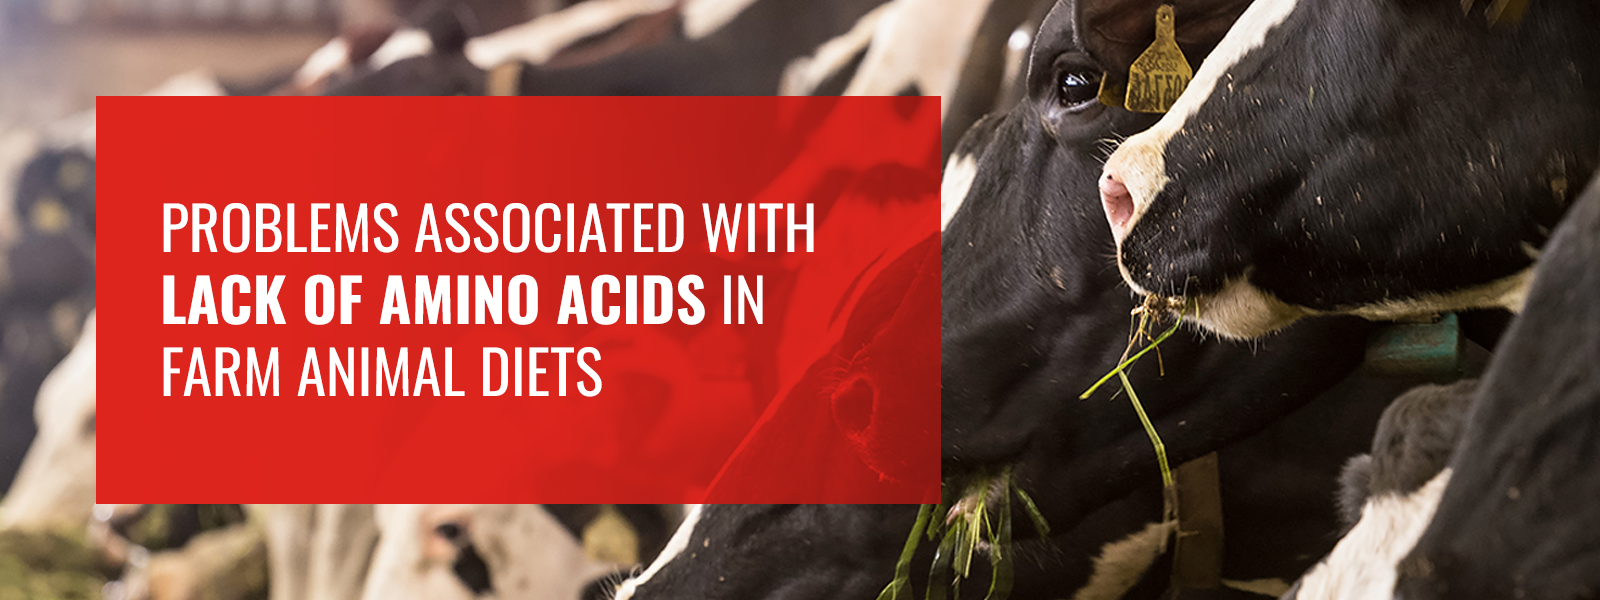 03 - Lack of Amino Acids